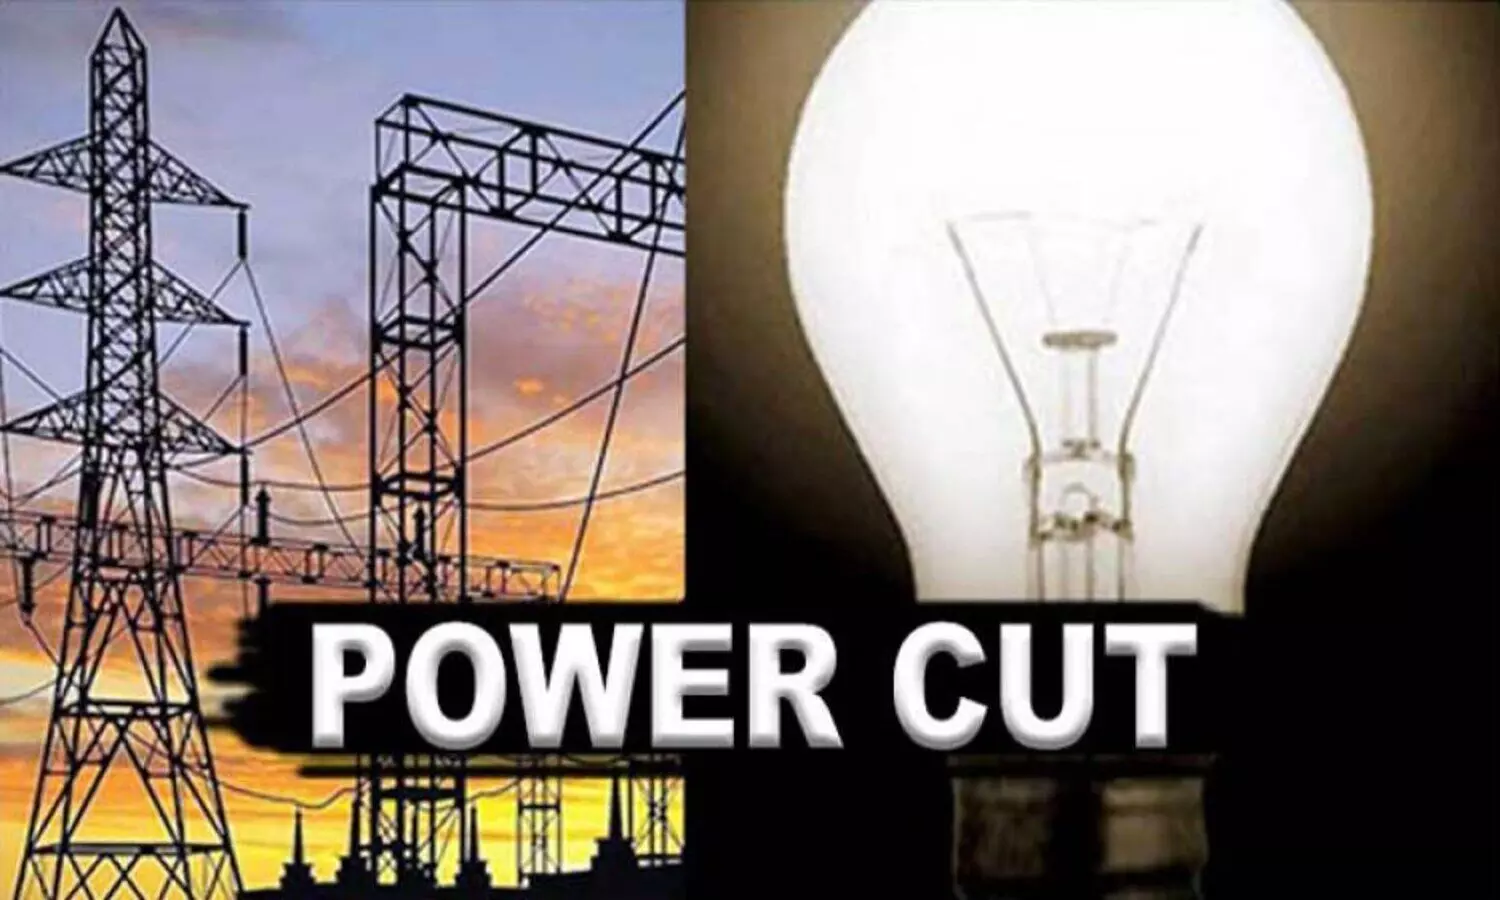 बिजली संकट : दशहरा-दिवाली पर रहेगा अंधेरा, खत्म होने की कगार पर कोयला, बहुत बुरे हुए हालात